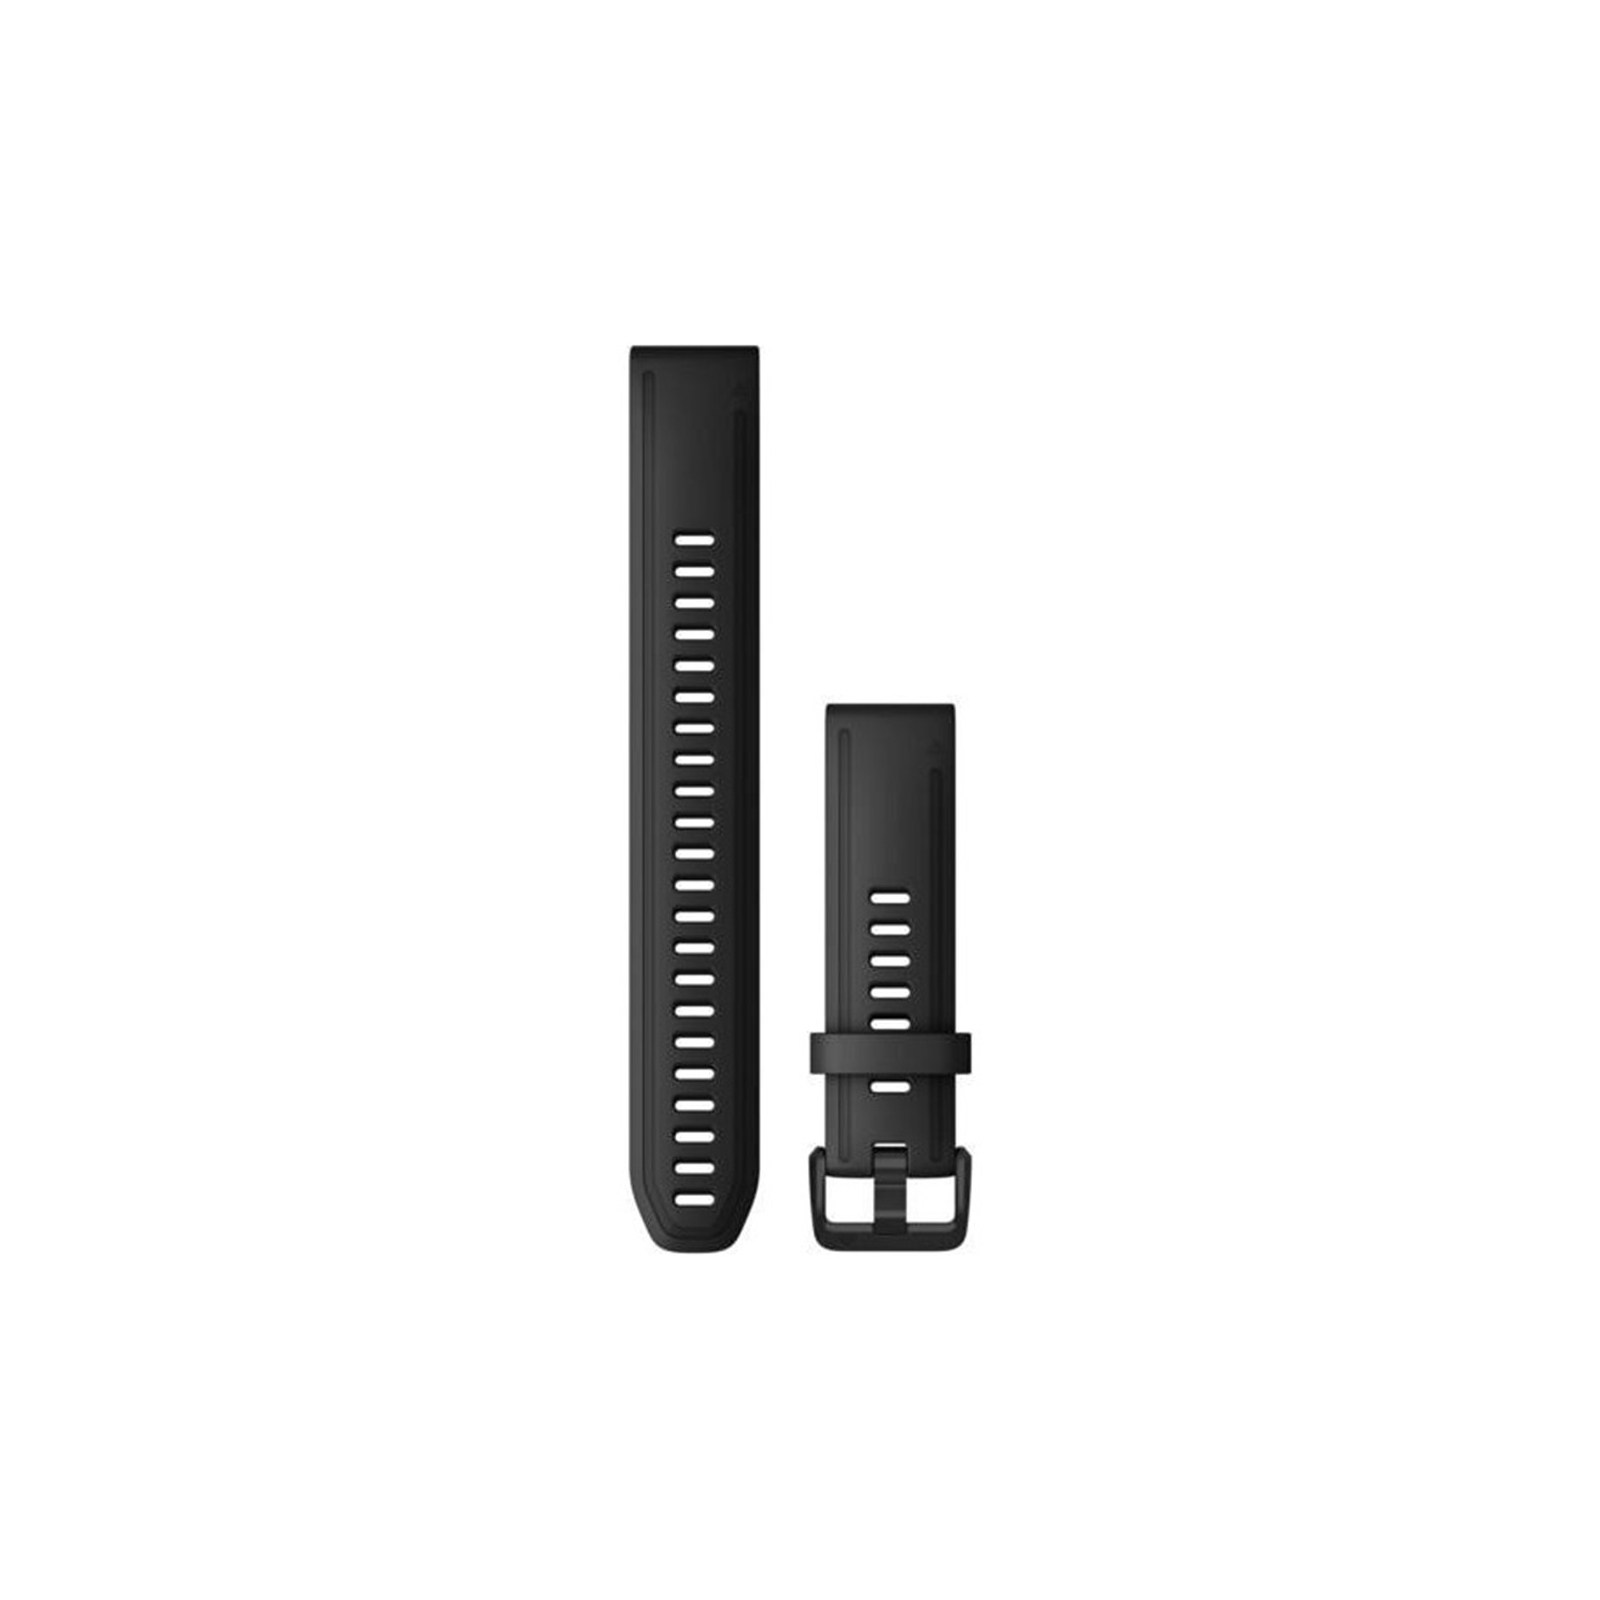 Ремешок для смарт-часов Garmin fenix 7S, 20mm QuickFit Black Silicone (010-13102-00) изображение 2